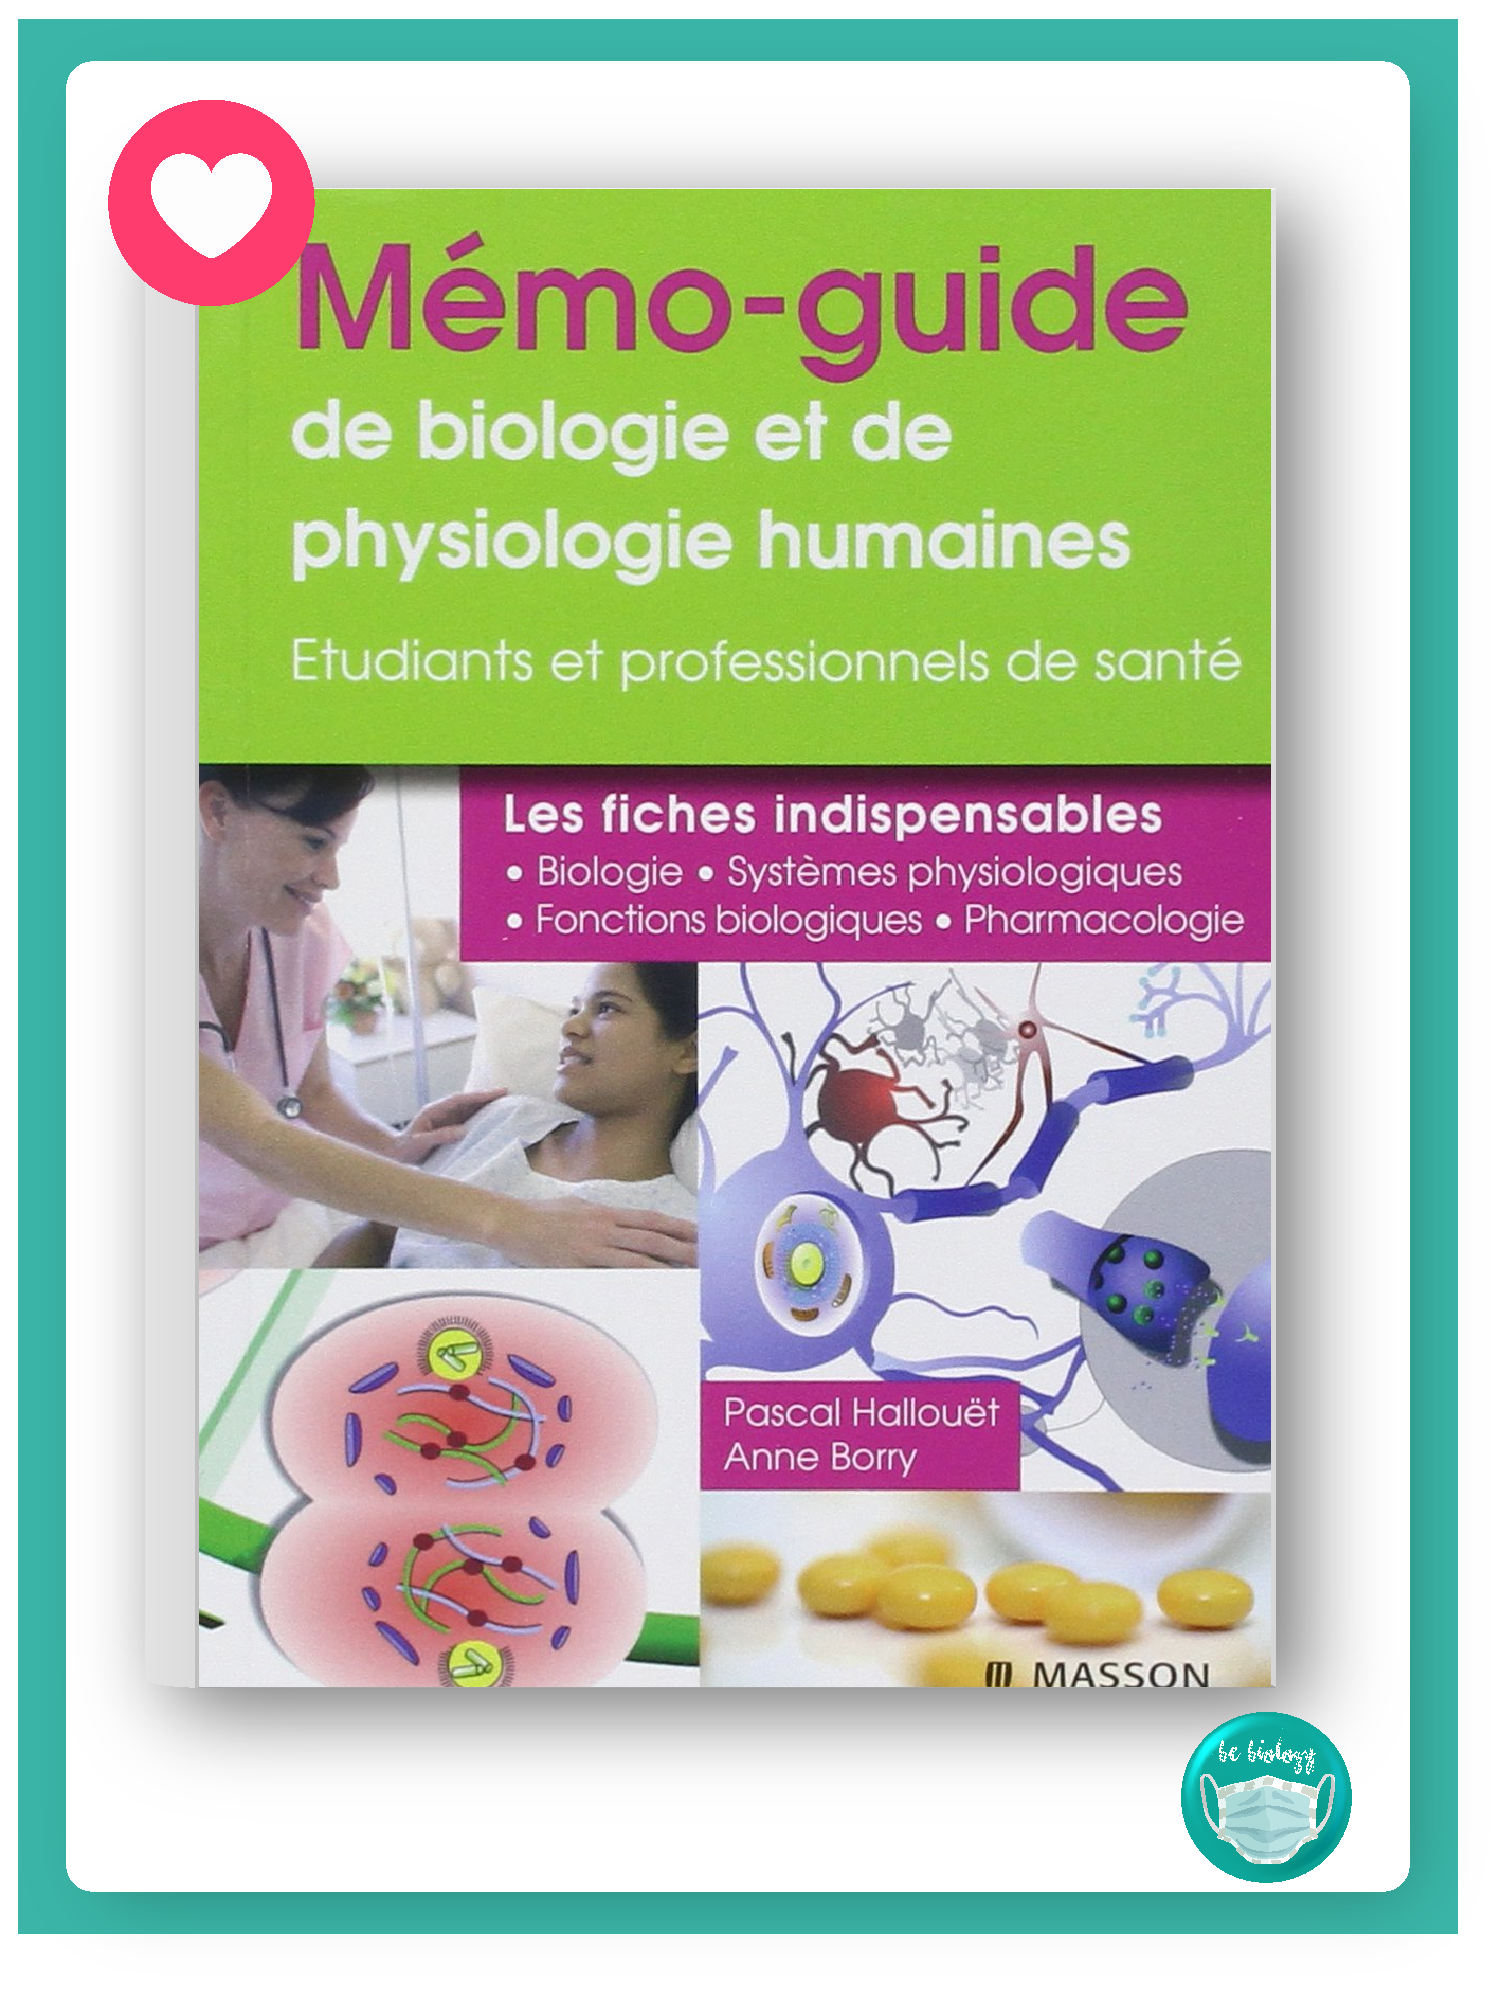 Mémo-guide de biologie et de physiologie humaines